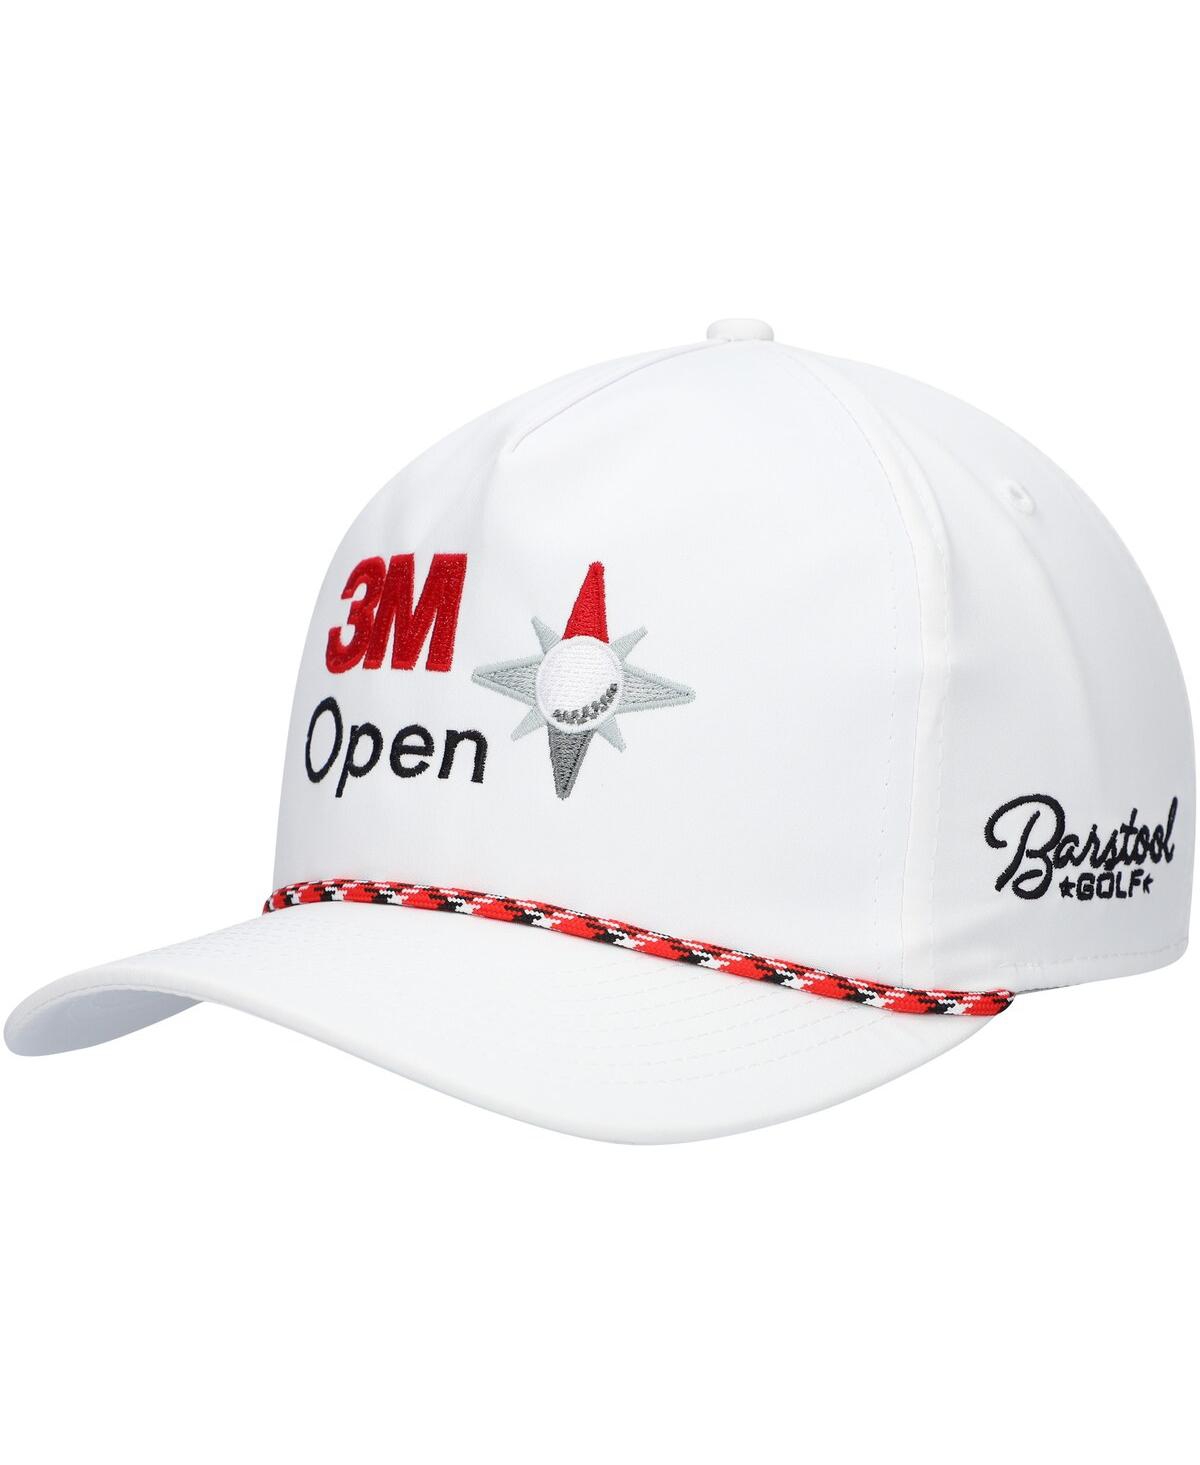 Barstool Golf Men's  White 3m Open Rope Snapback Hat